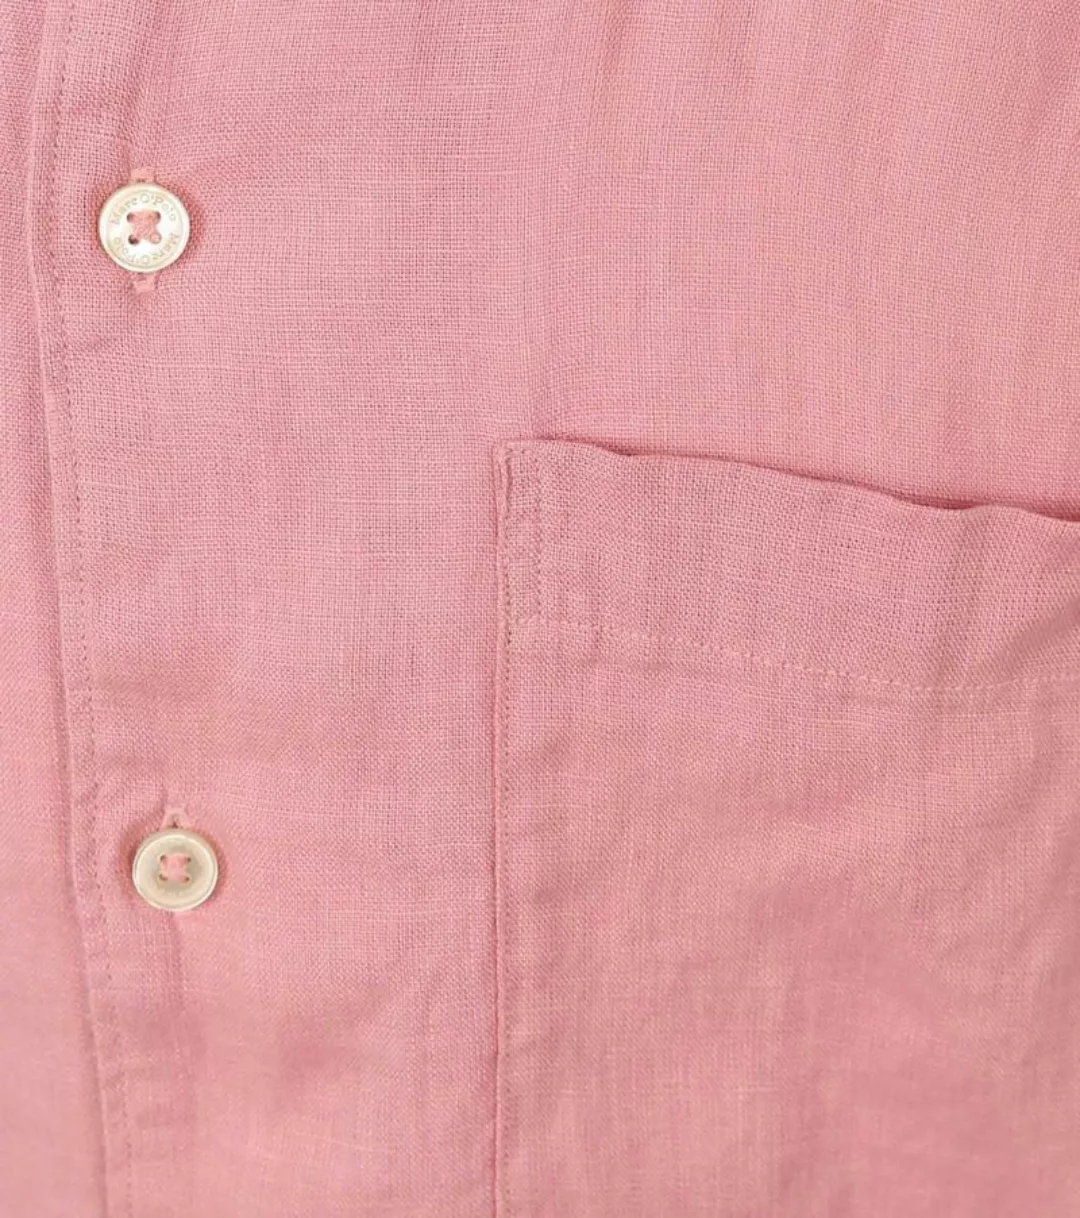 Marc O'Polo Hemd Short Sleeves Leinen Rosa - Größe XXL günstig online kaufen